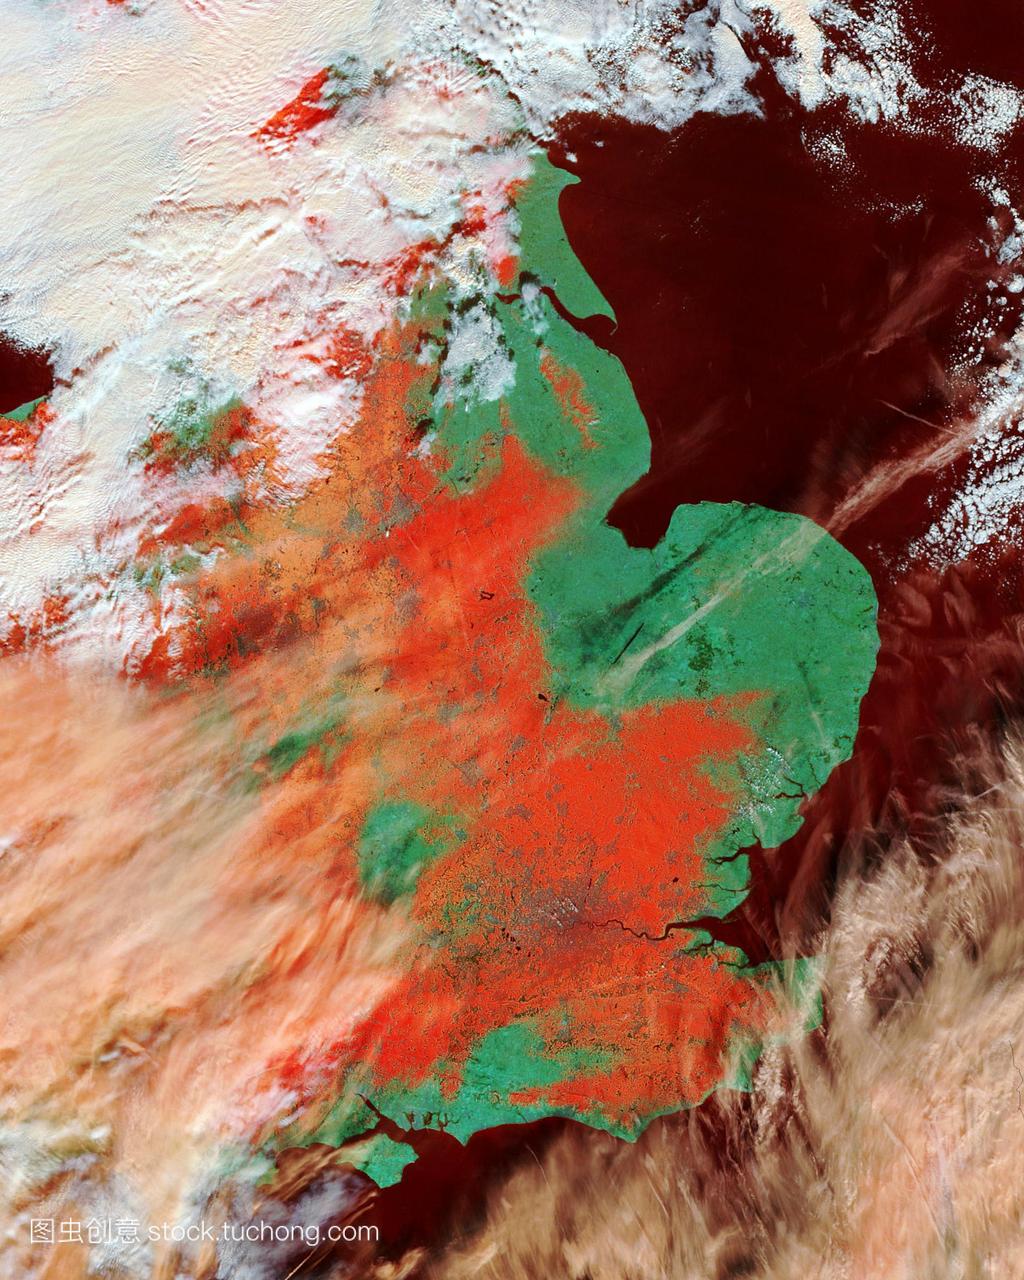 英国东南部降雪。卫星图像显示积雪的程度(红